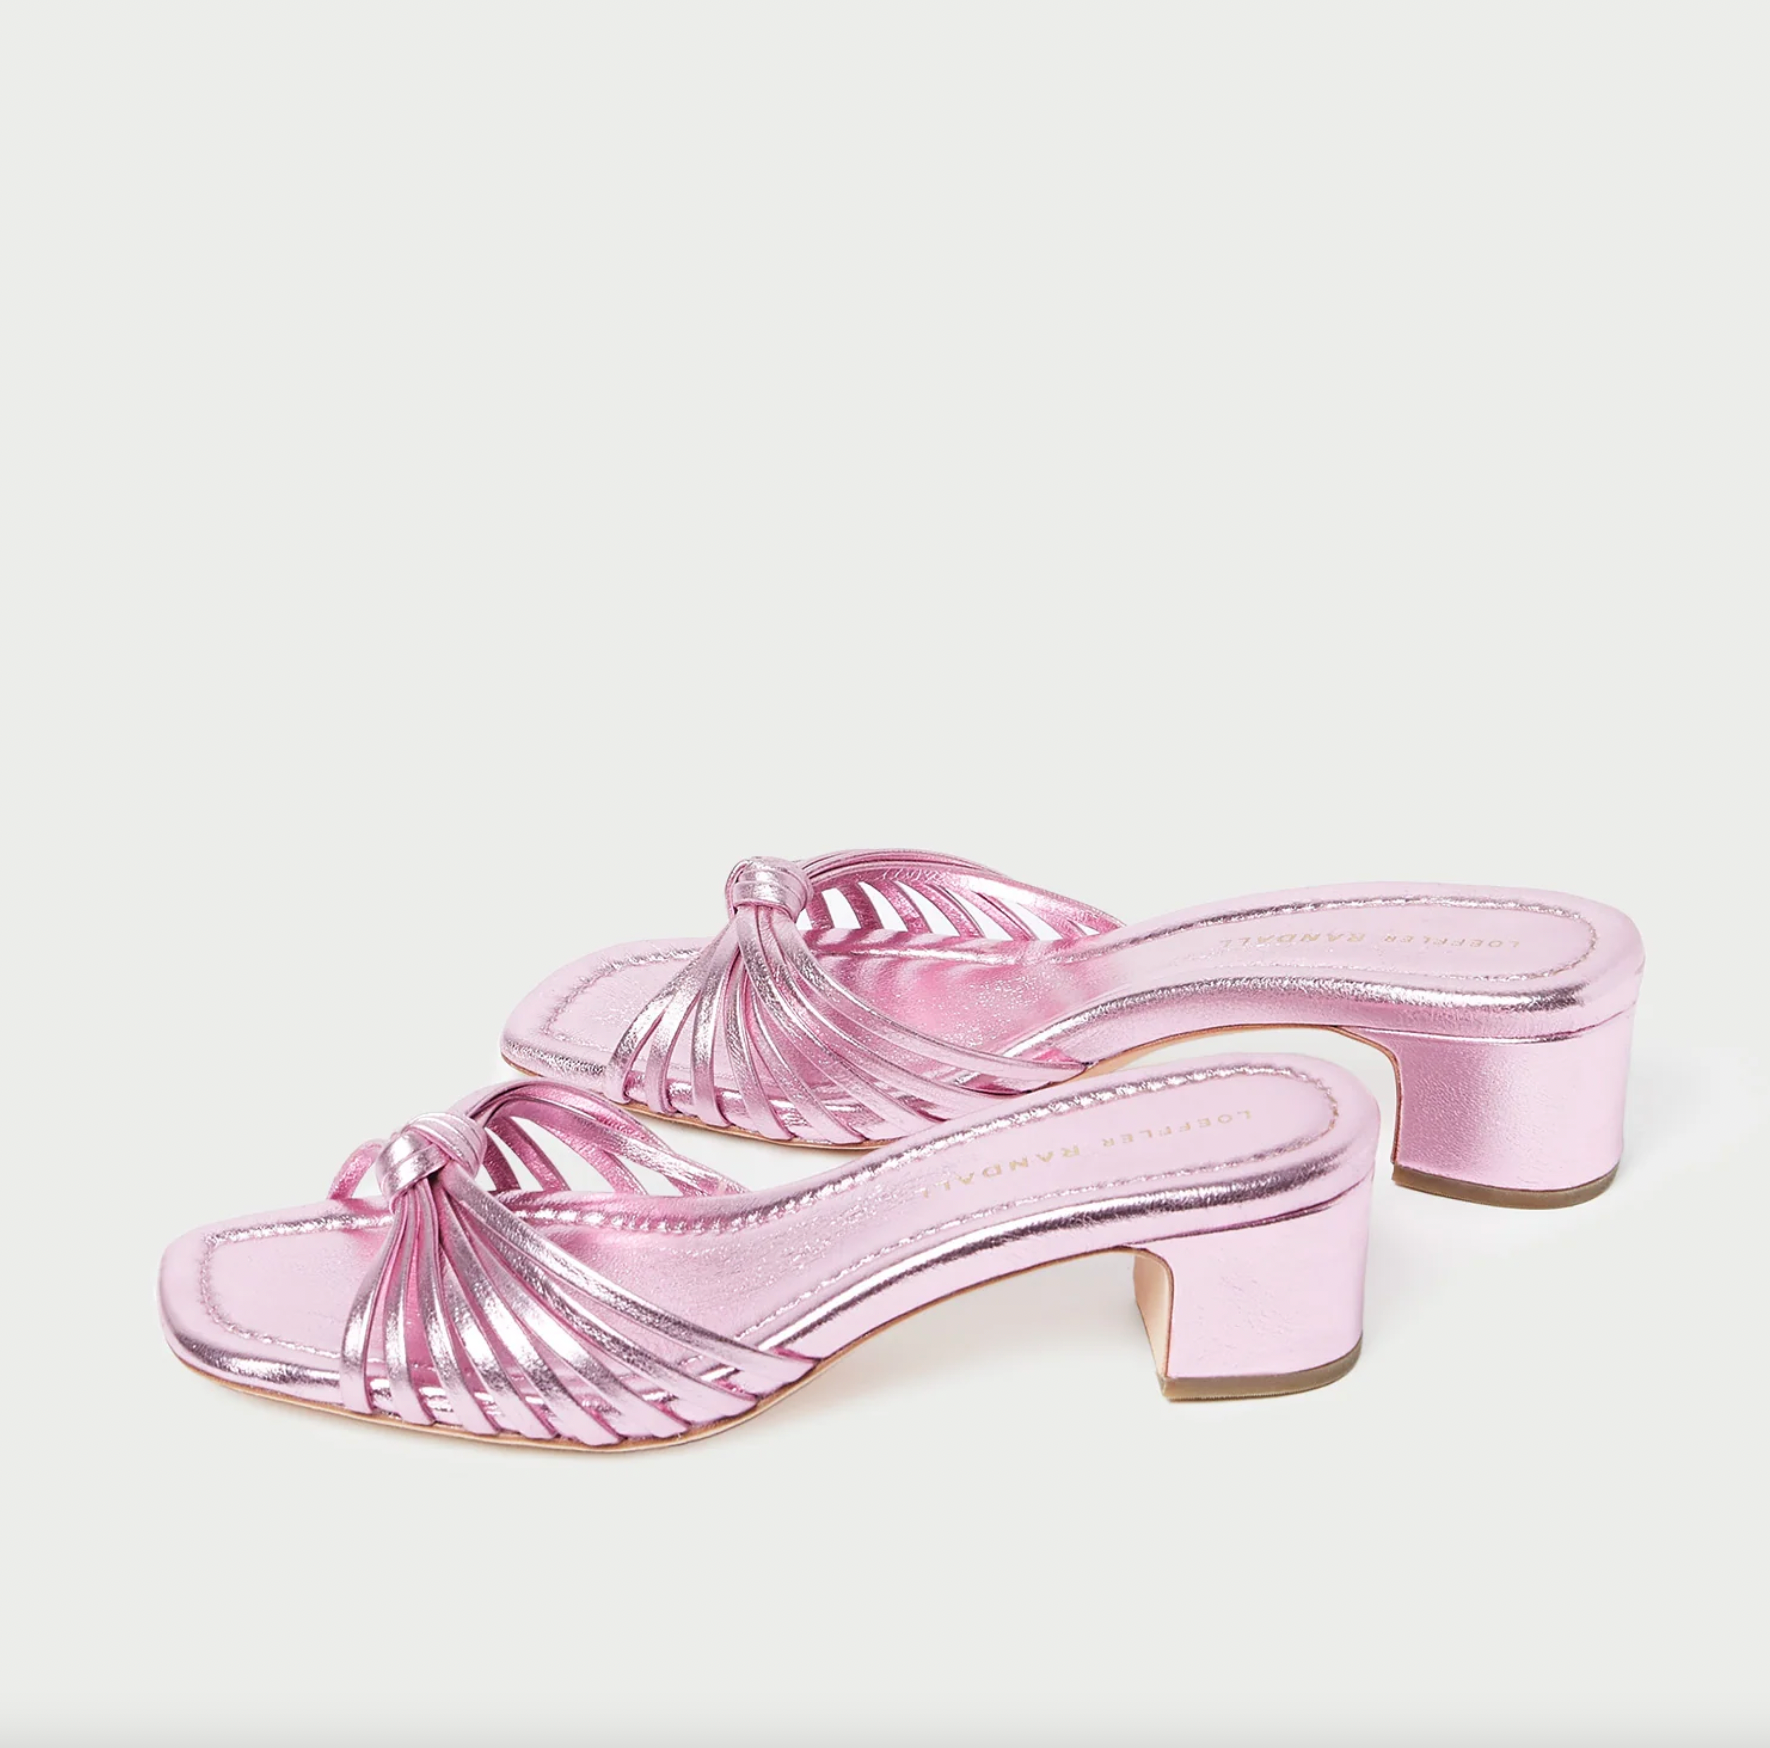 Hazel Knot Mid-Heel Mule Sandal - Pink